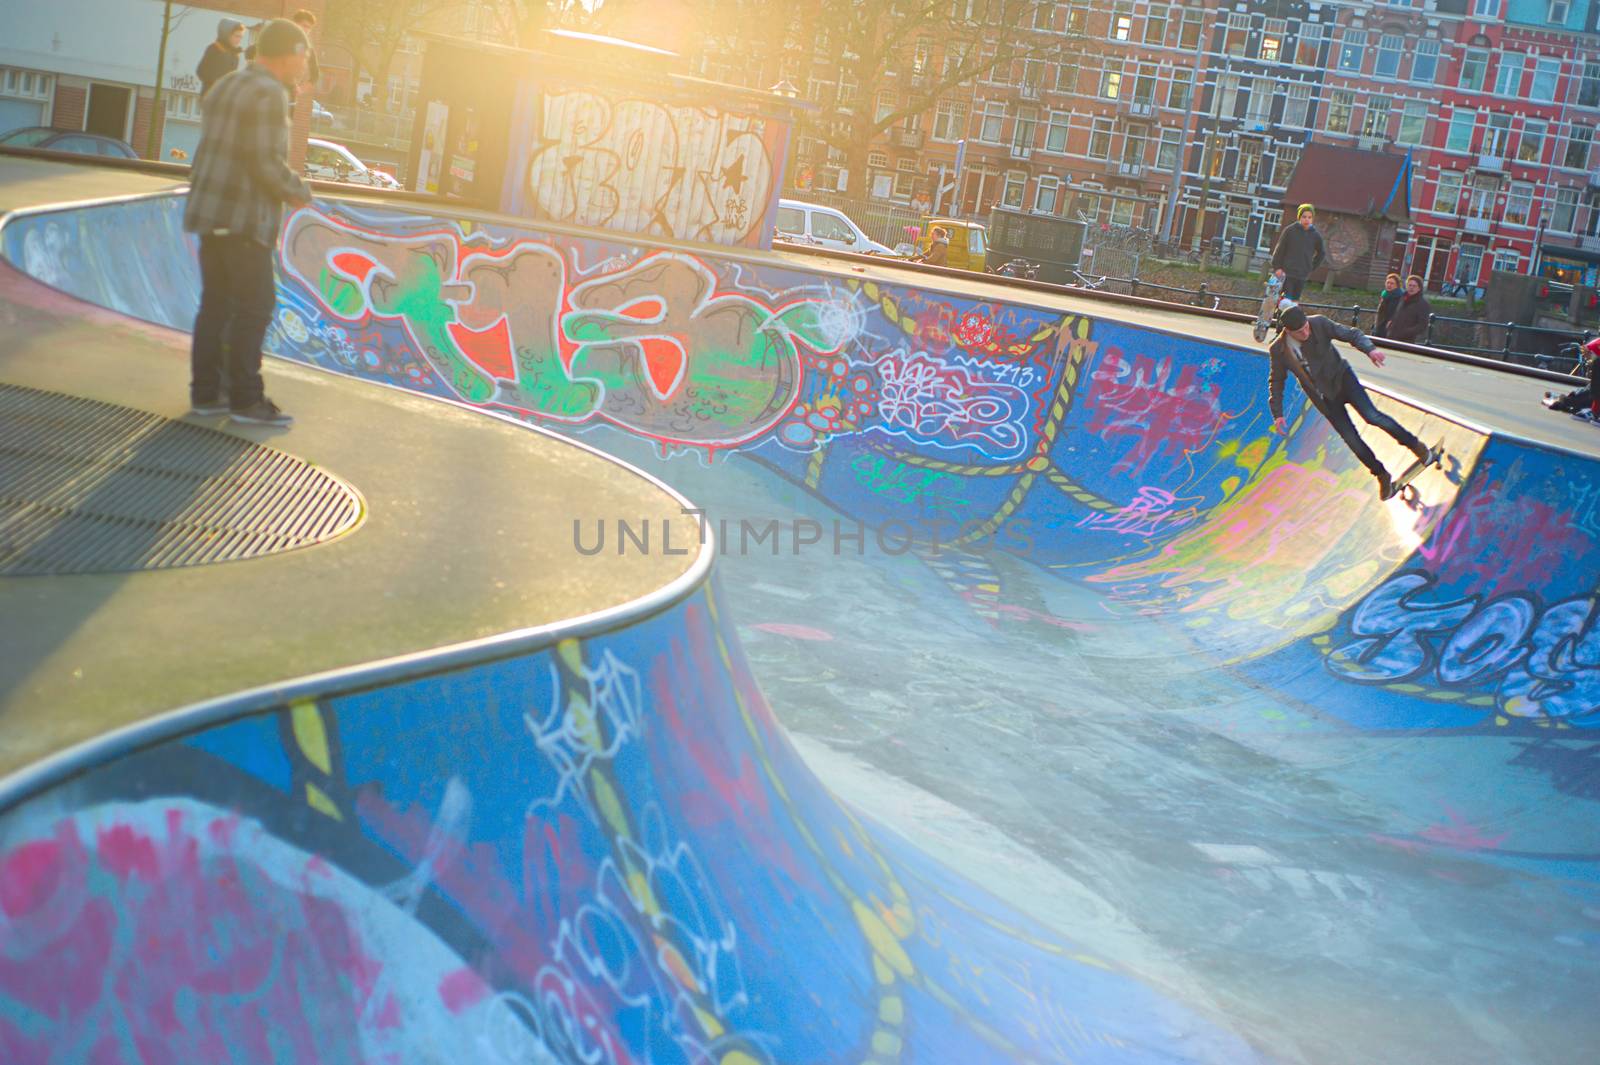 Amsterdam skate grounds and skaters by joyfull